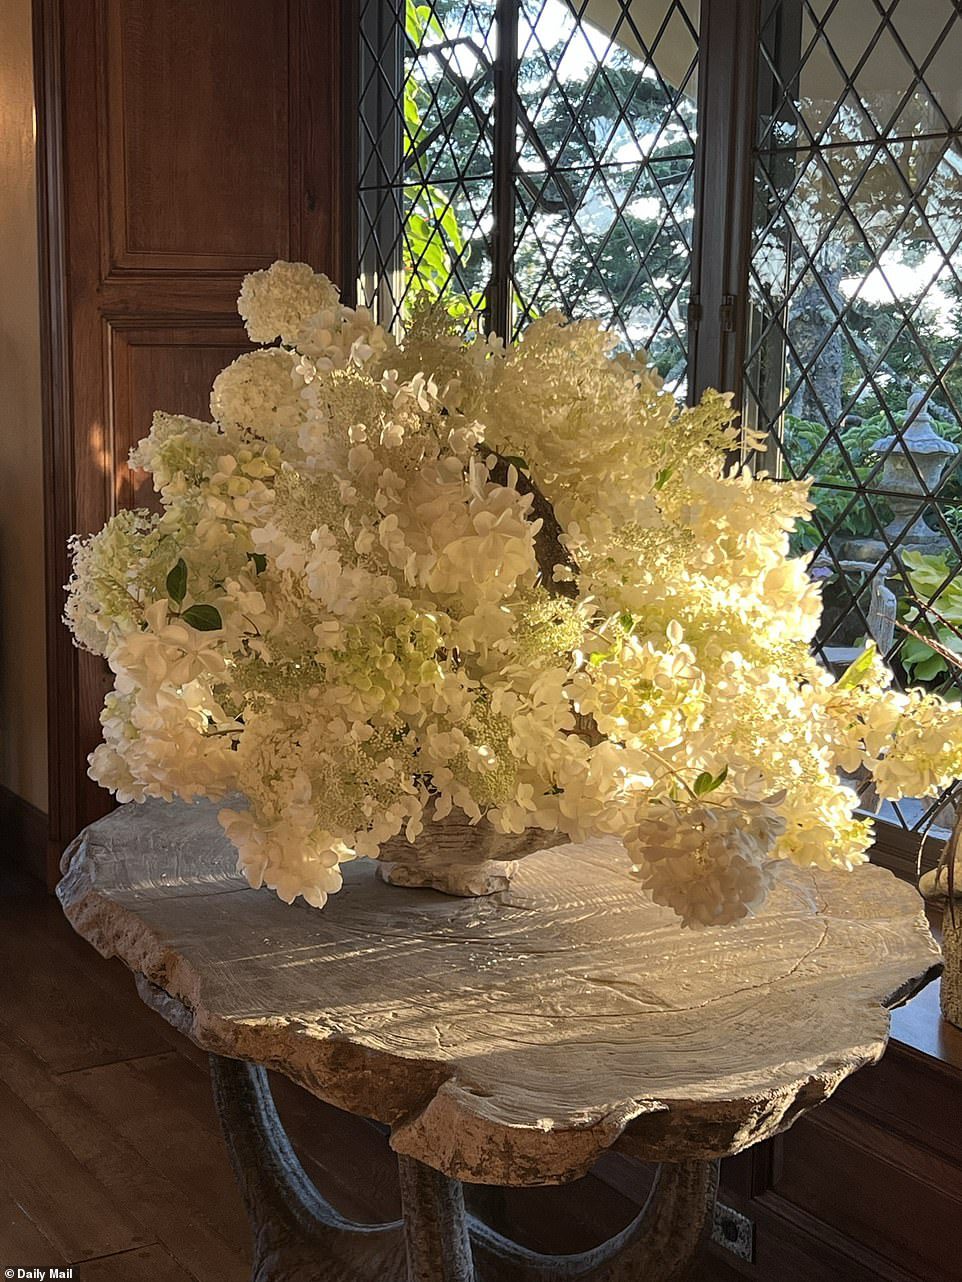 Zonlicht: de zon raakt de bloemen op een houten tafel